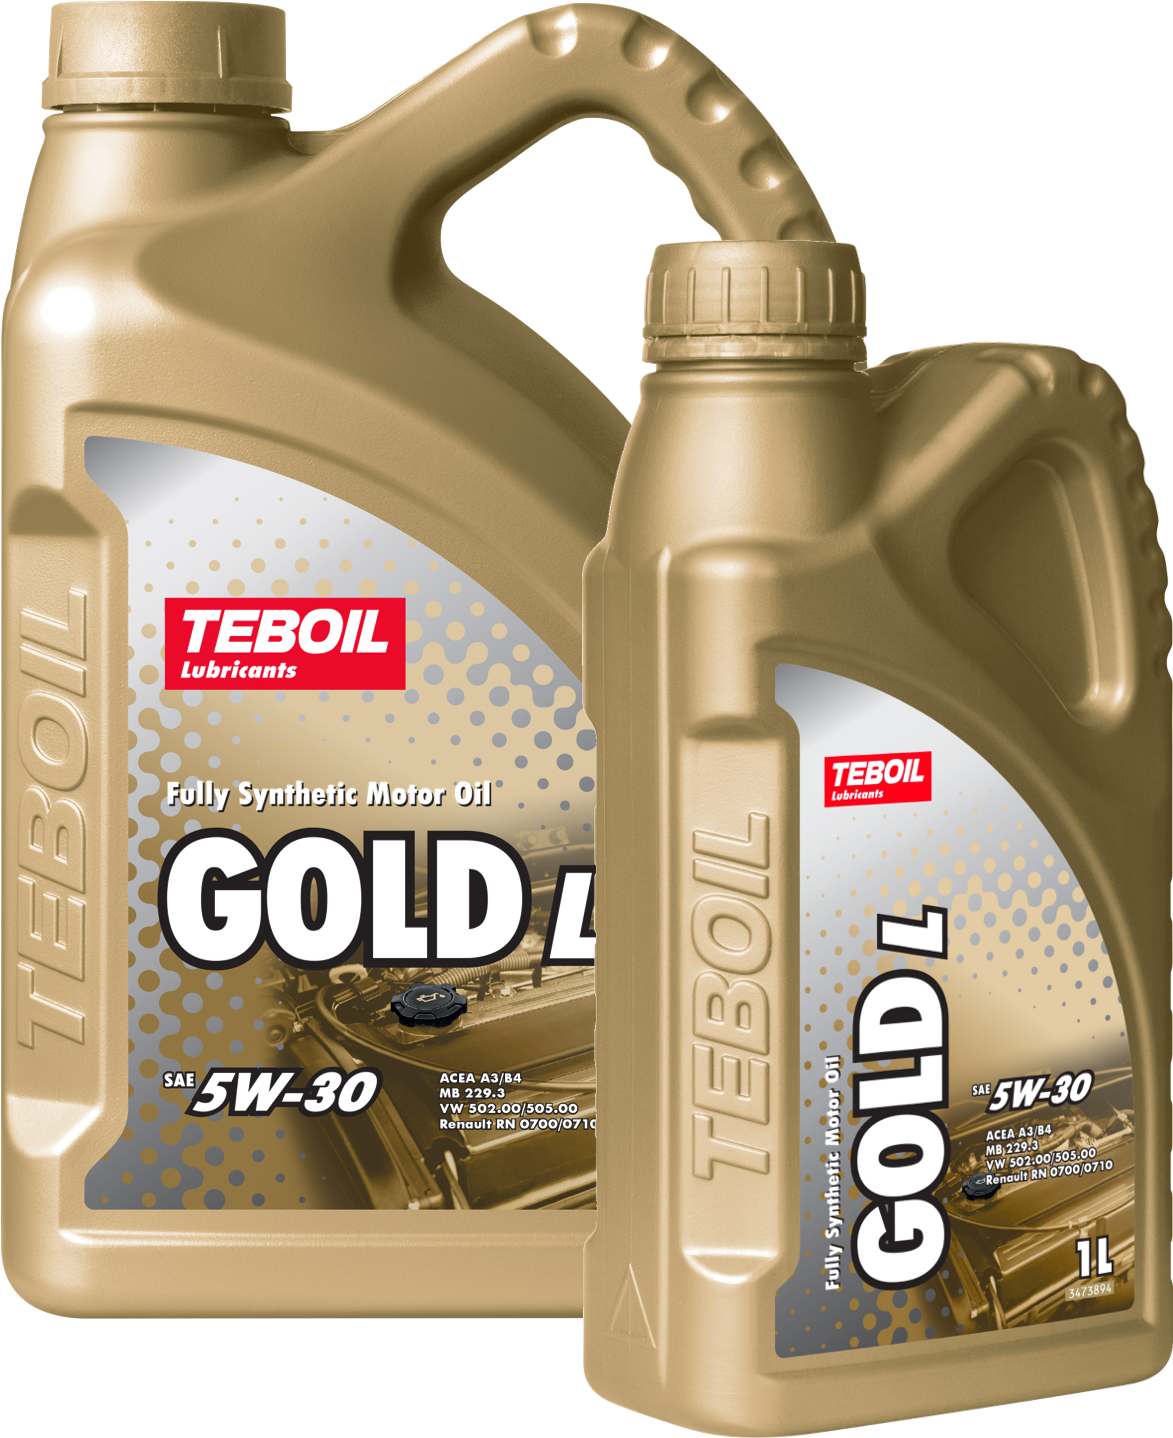 Моторное масло teboil gold l. Масло Тебойл 5w30 Gold Fe. Teboil Gold l 5w-30 характеристики. Масло Teboil Gold l 5w-40 акция 4+1. Teboil Gold Fe 0-20.